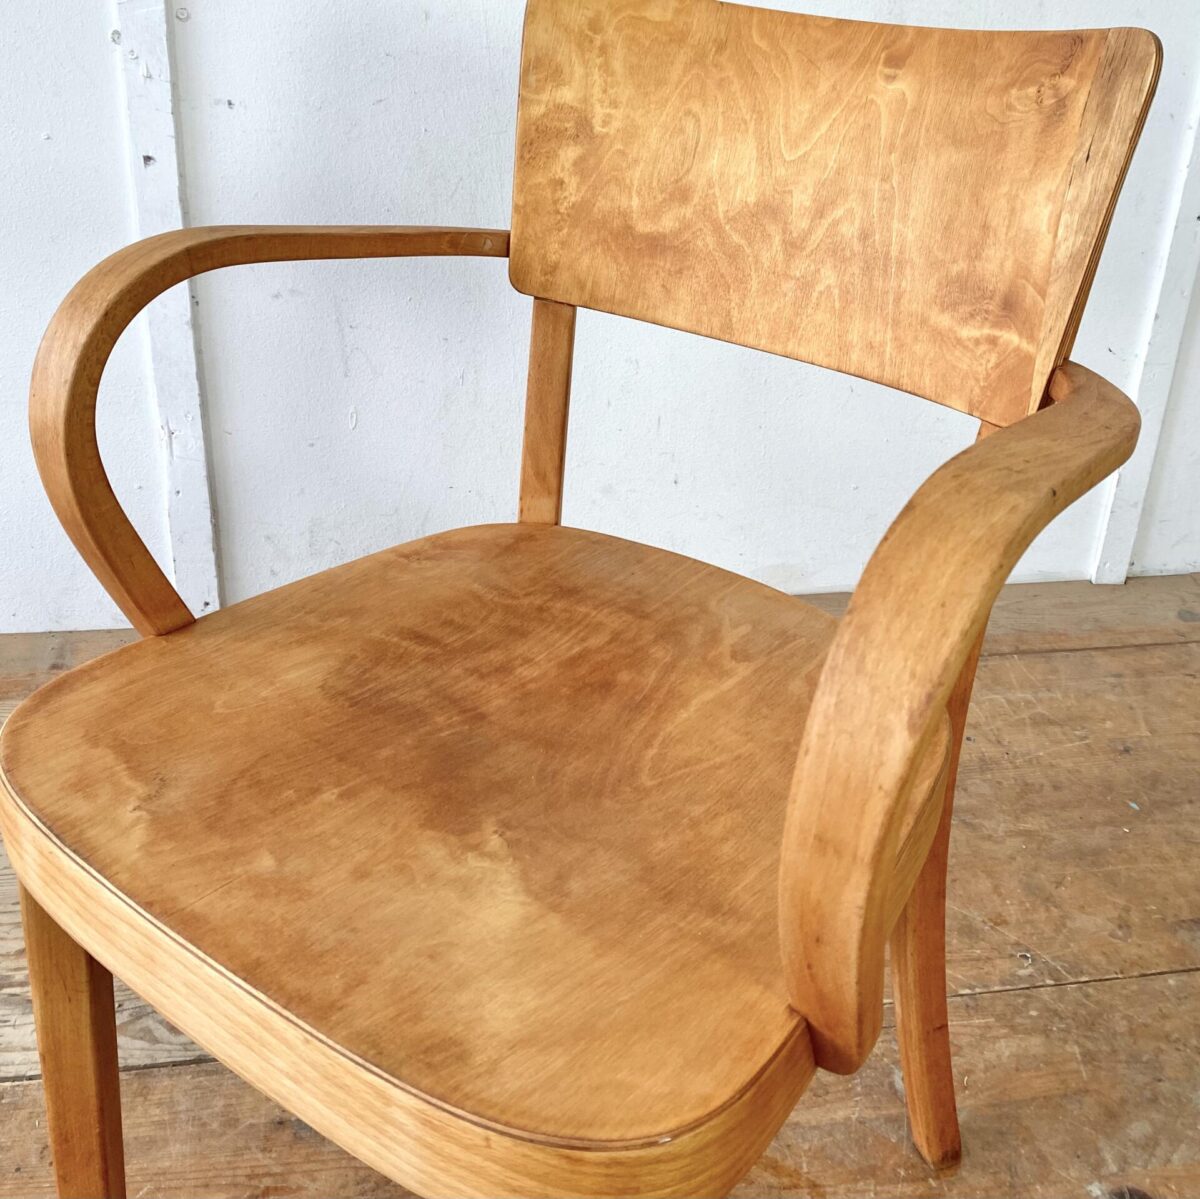 Deuxieme.shop seltener Bugholz Sessel. Swissdesign 50er Jahre. Horgen Glarus Armlehnstuhl von 1958. Sitz und Lehne aus Sperrholz, formverleimt. Die restlichen Teile sind aus Buche Vollholz, Dampfgebogen. Der Stuhl ist in stabilem restaurierten Zustand, fehlende Furnier Ausbrüche wurden frisch eingesetzt, die wackligen Vorderbeine neu eingeleimt. Die Holz Oberflächen sind geschliffen und geölt. 